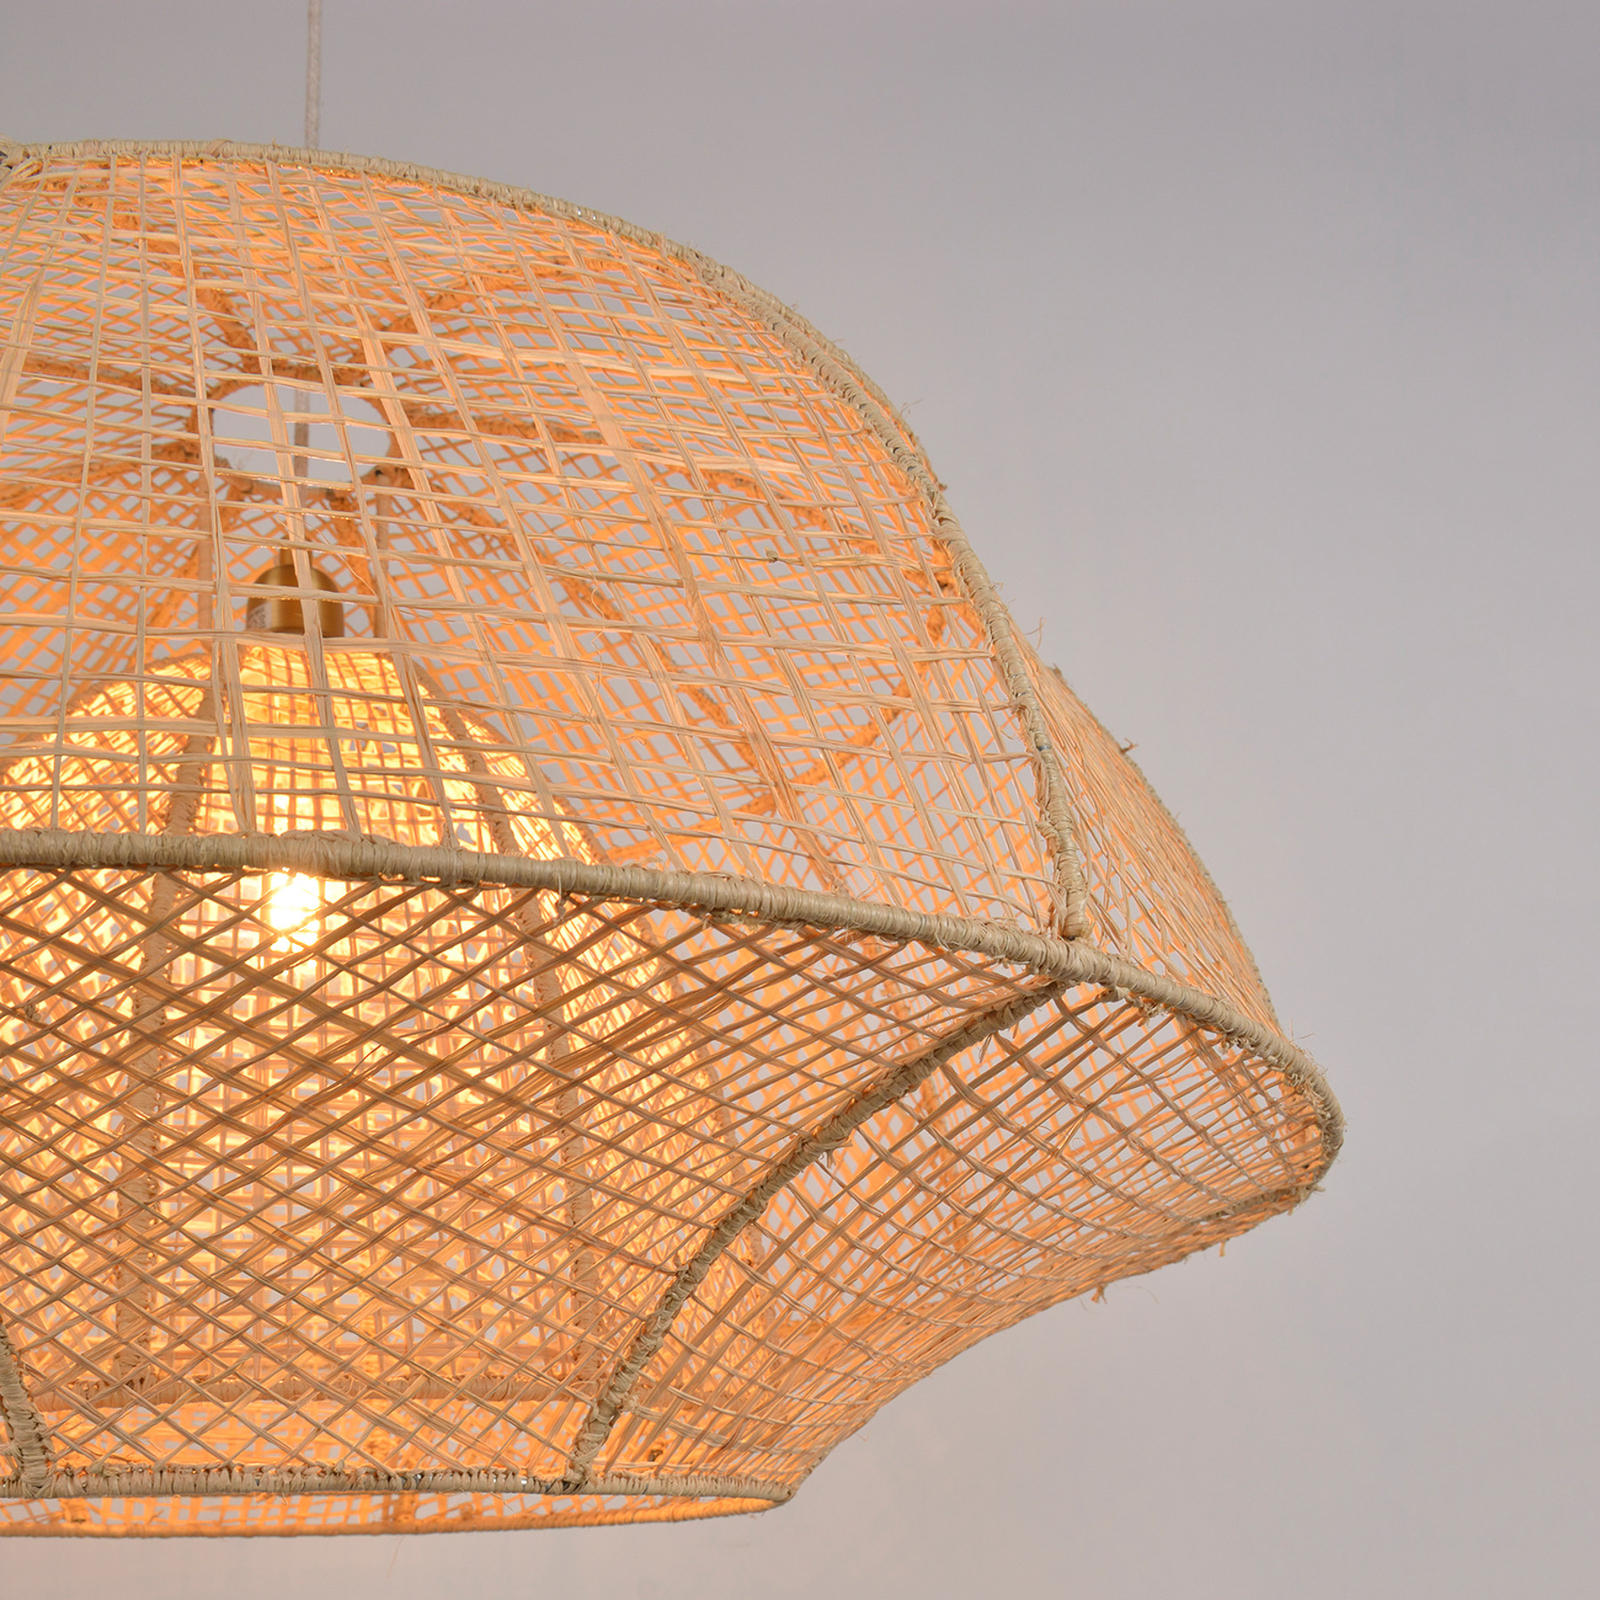 MARKET SET Lampa wisząca Odyssée, włókno palmowe, Ø 78 cm